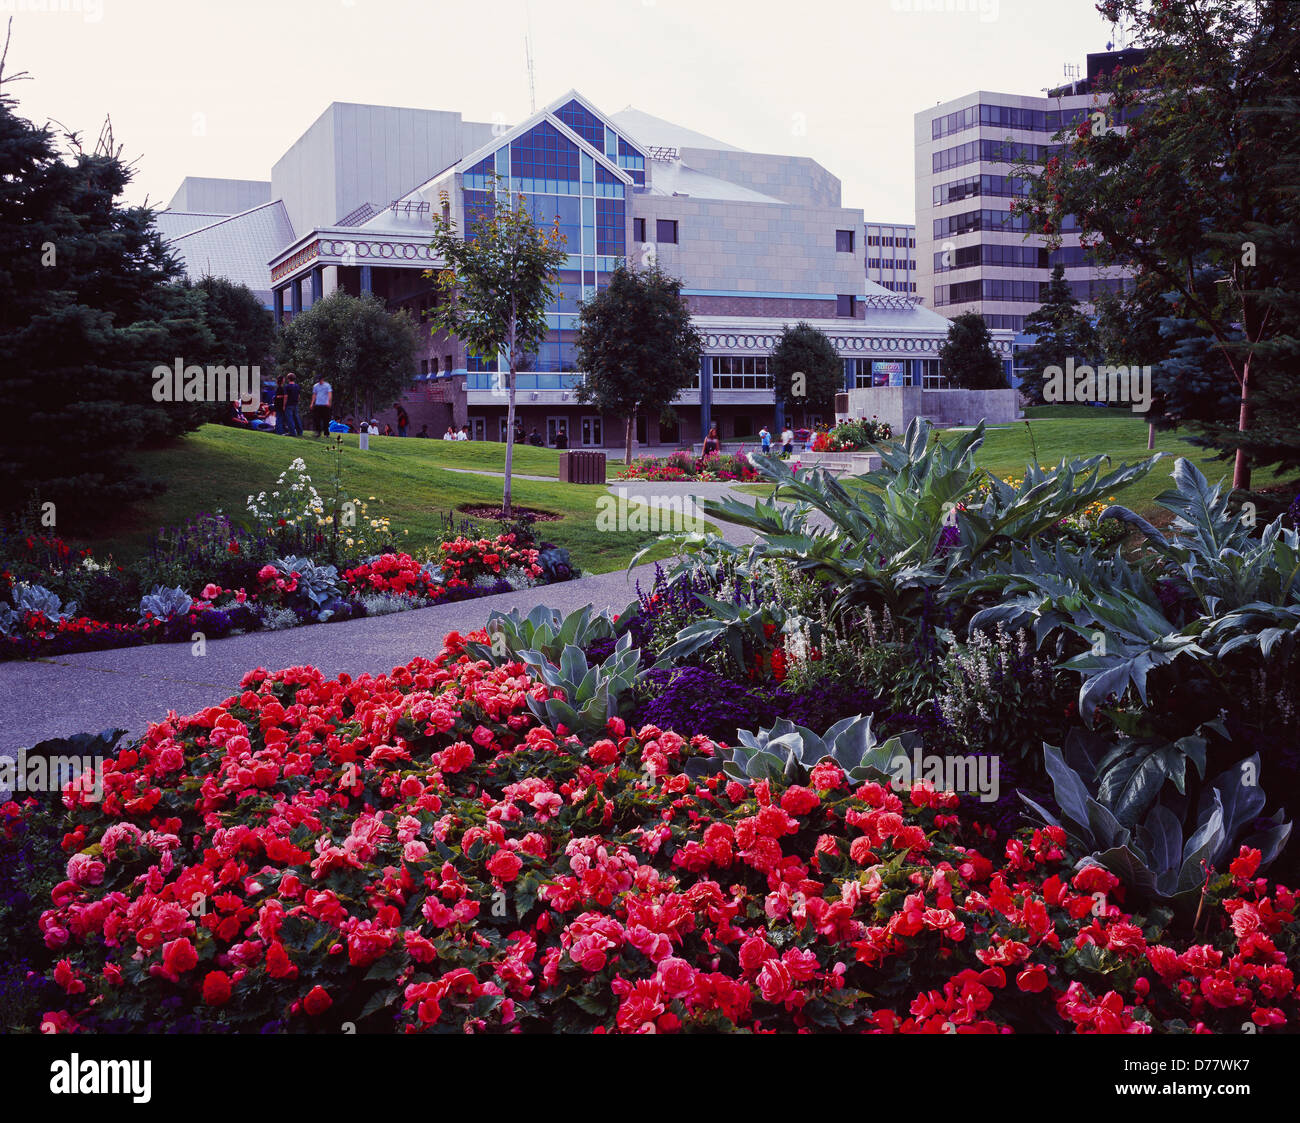 Jardines en Town Square Park Performing Arts Center, más allá del centro de Anchorage, Alaska. Foto de stock